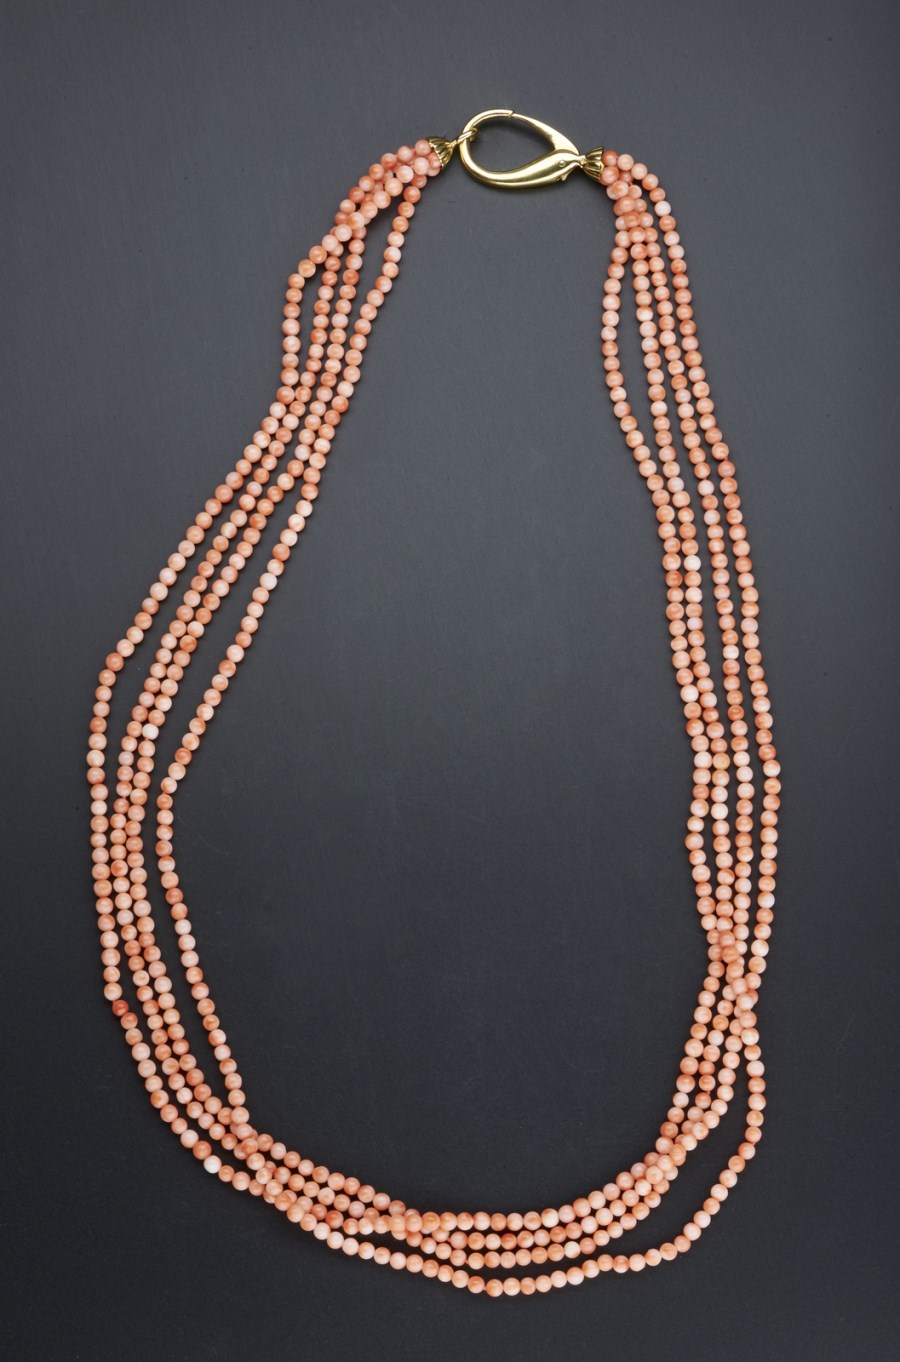 Collana di corallo rosa composta da n. 4 fili  con chiusura a moschettone in oro giallo 750-1000. Peso lordo gr 94,40. (. )